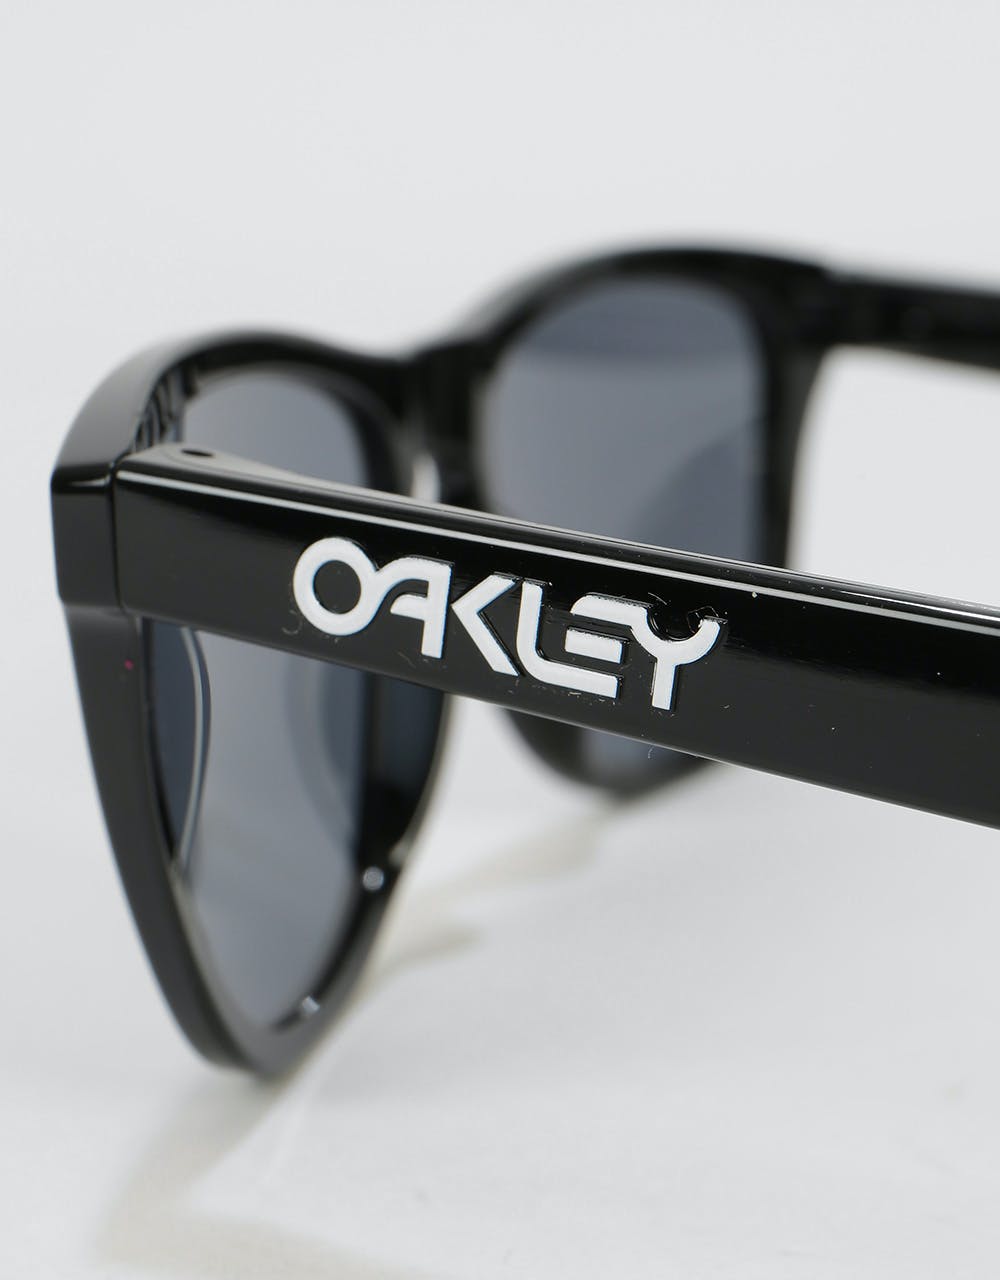 Oakley Frogskins Sunglasses - Polished Black (Grey Lens)